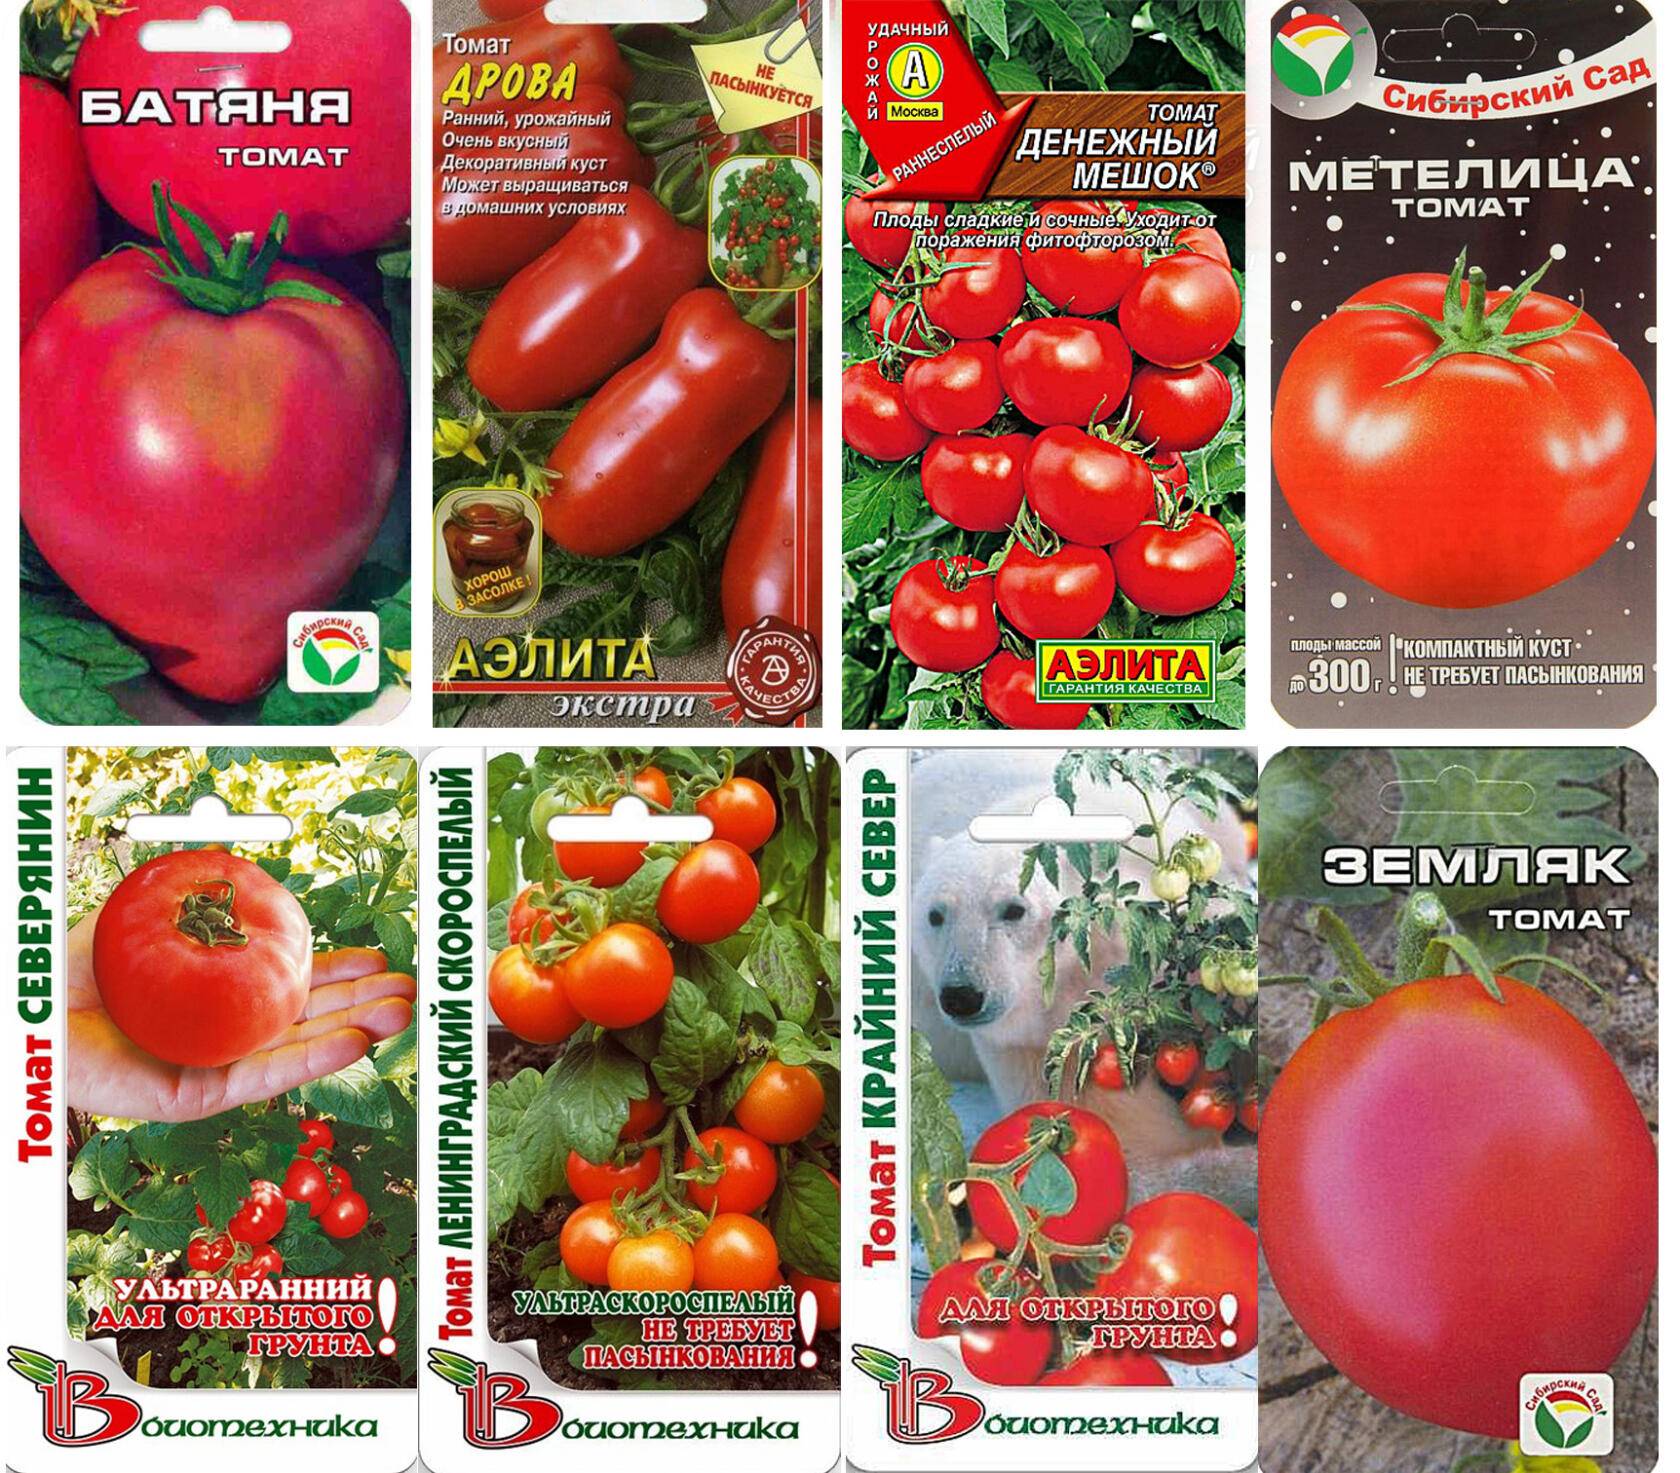 Как выбрать лучшие сорта томатов для выращивания в Беларуси